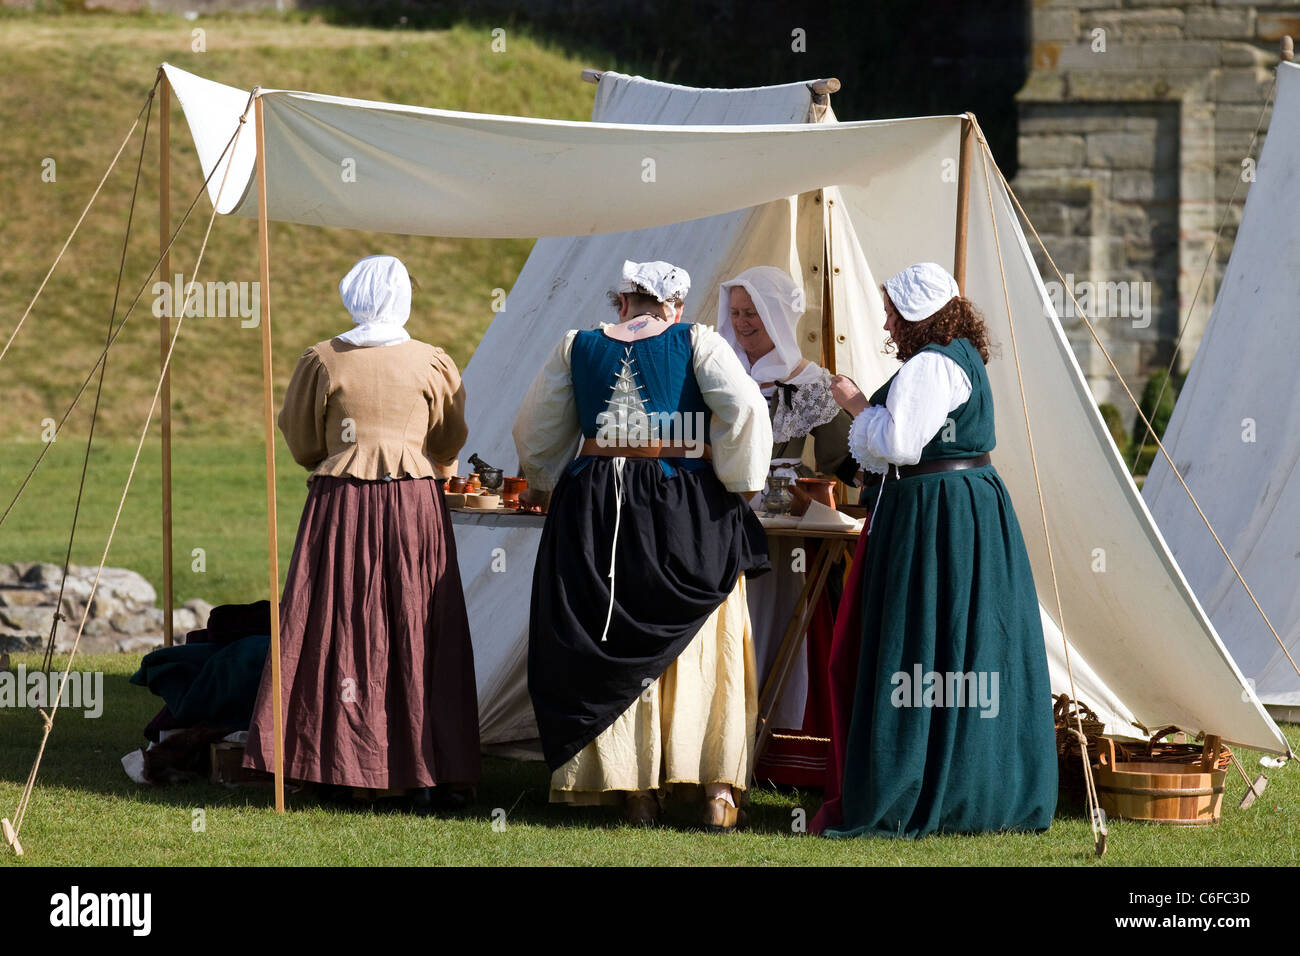 Vestimentaires du XVIIe siècle Life & Times reconstitution historique militaire et civile, château de Tutbury, Derbyshire, Royaume-Uni Banque D'Images